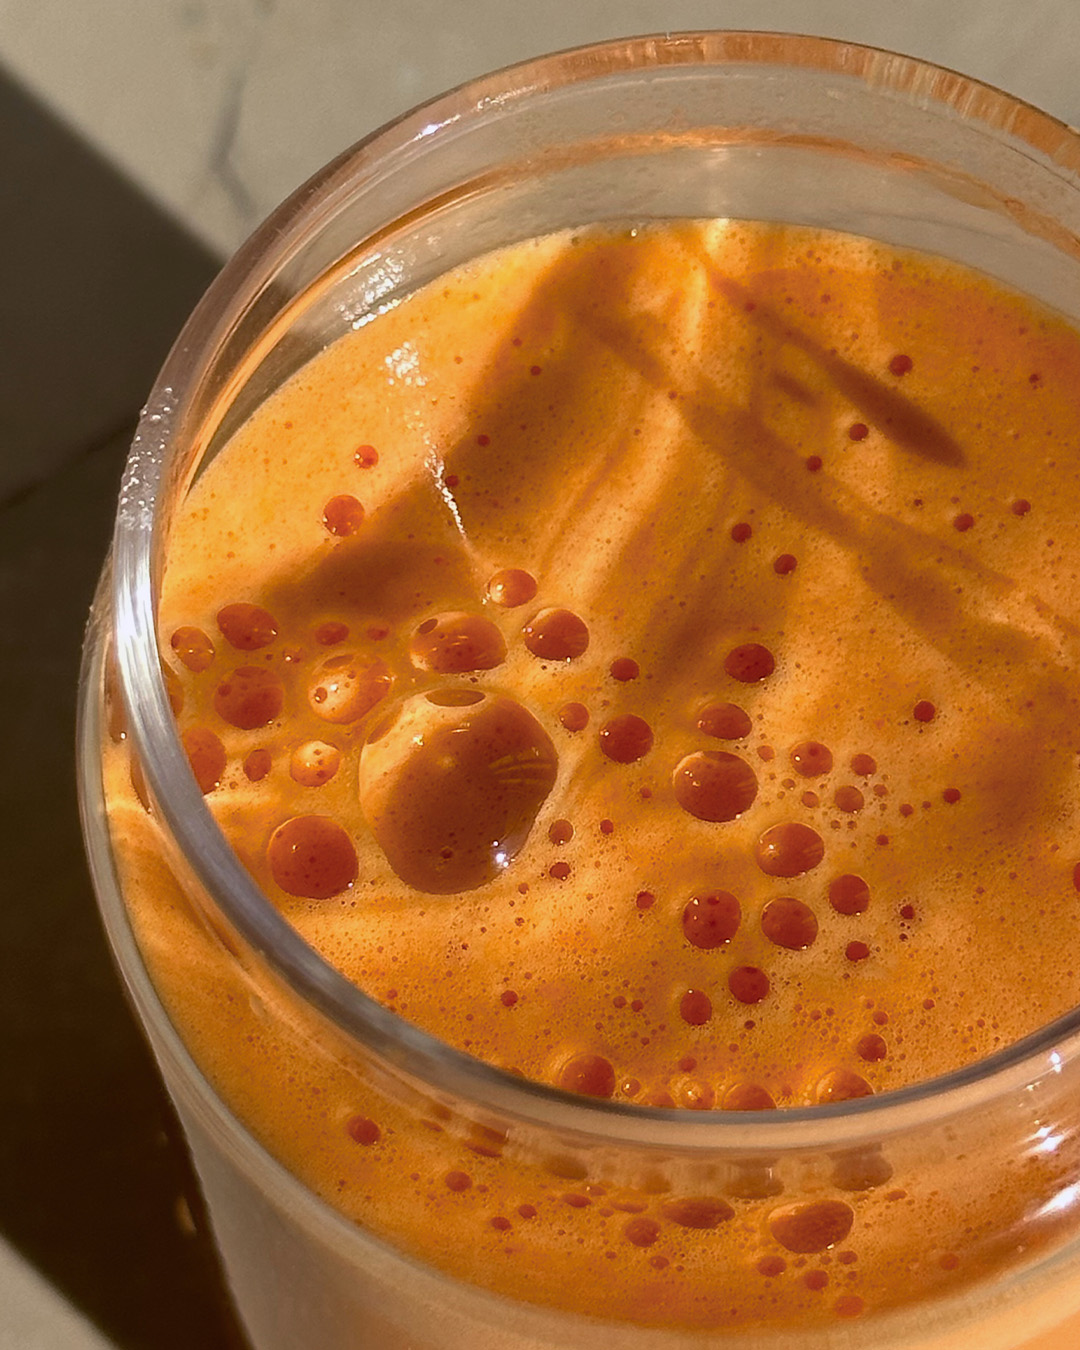 Aumente su inmunidad de forma natural con este zumo de zanahoria repleto de vitaminas